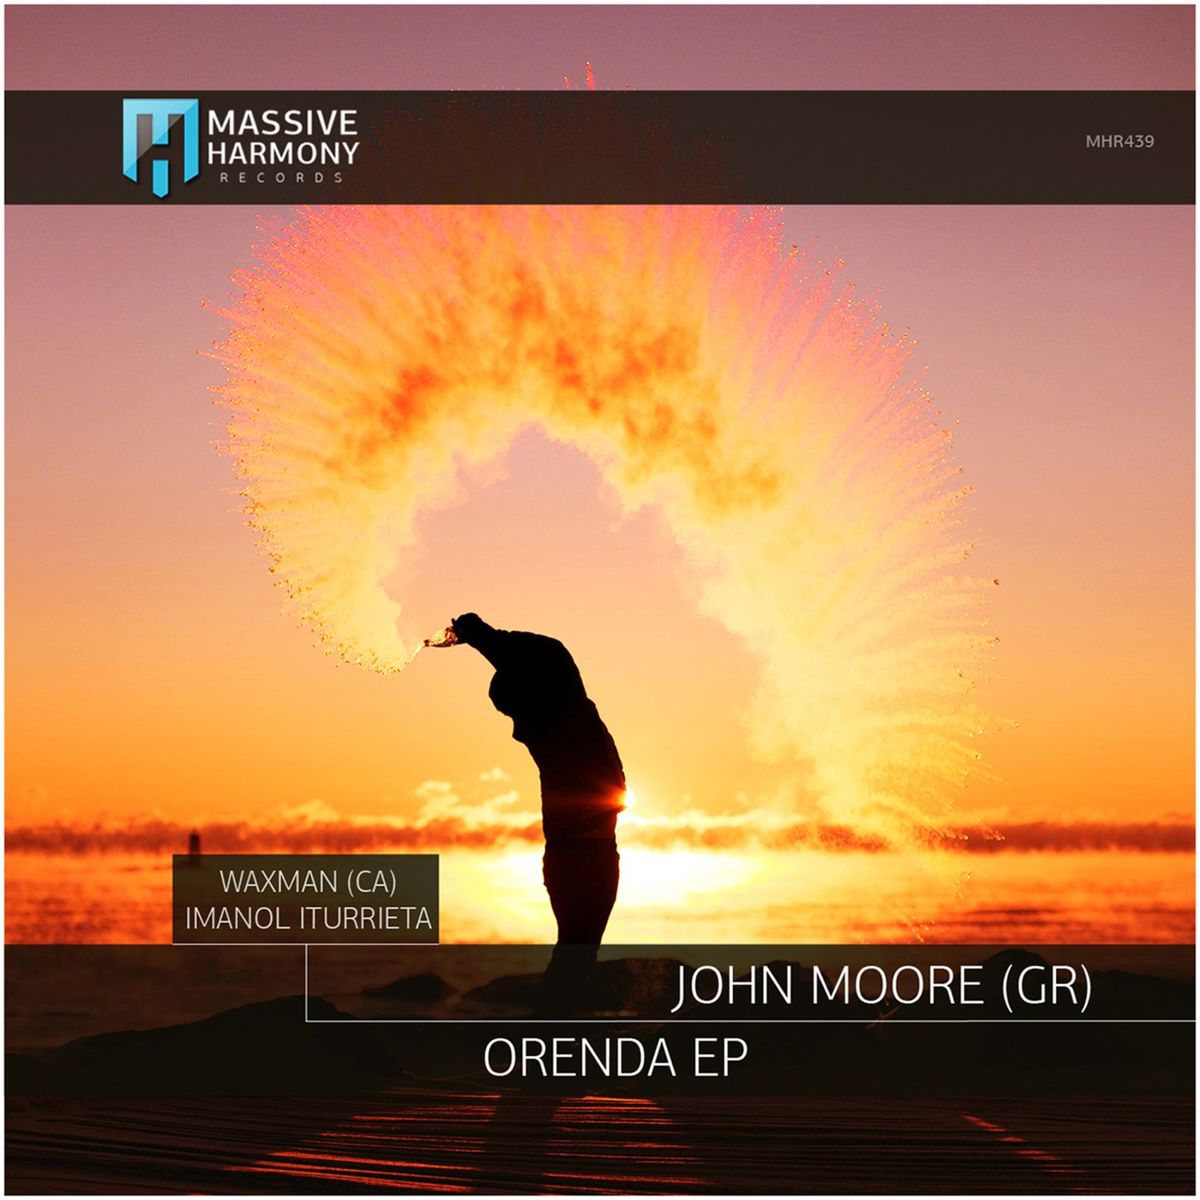 John Moore (GR) - Orenda EP [MHR439]